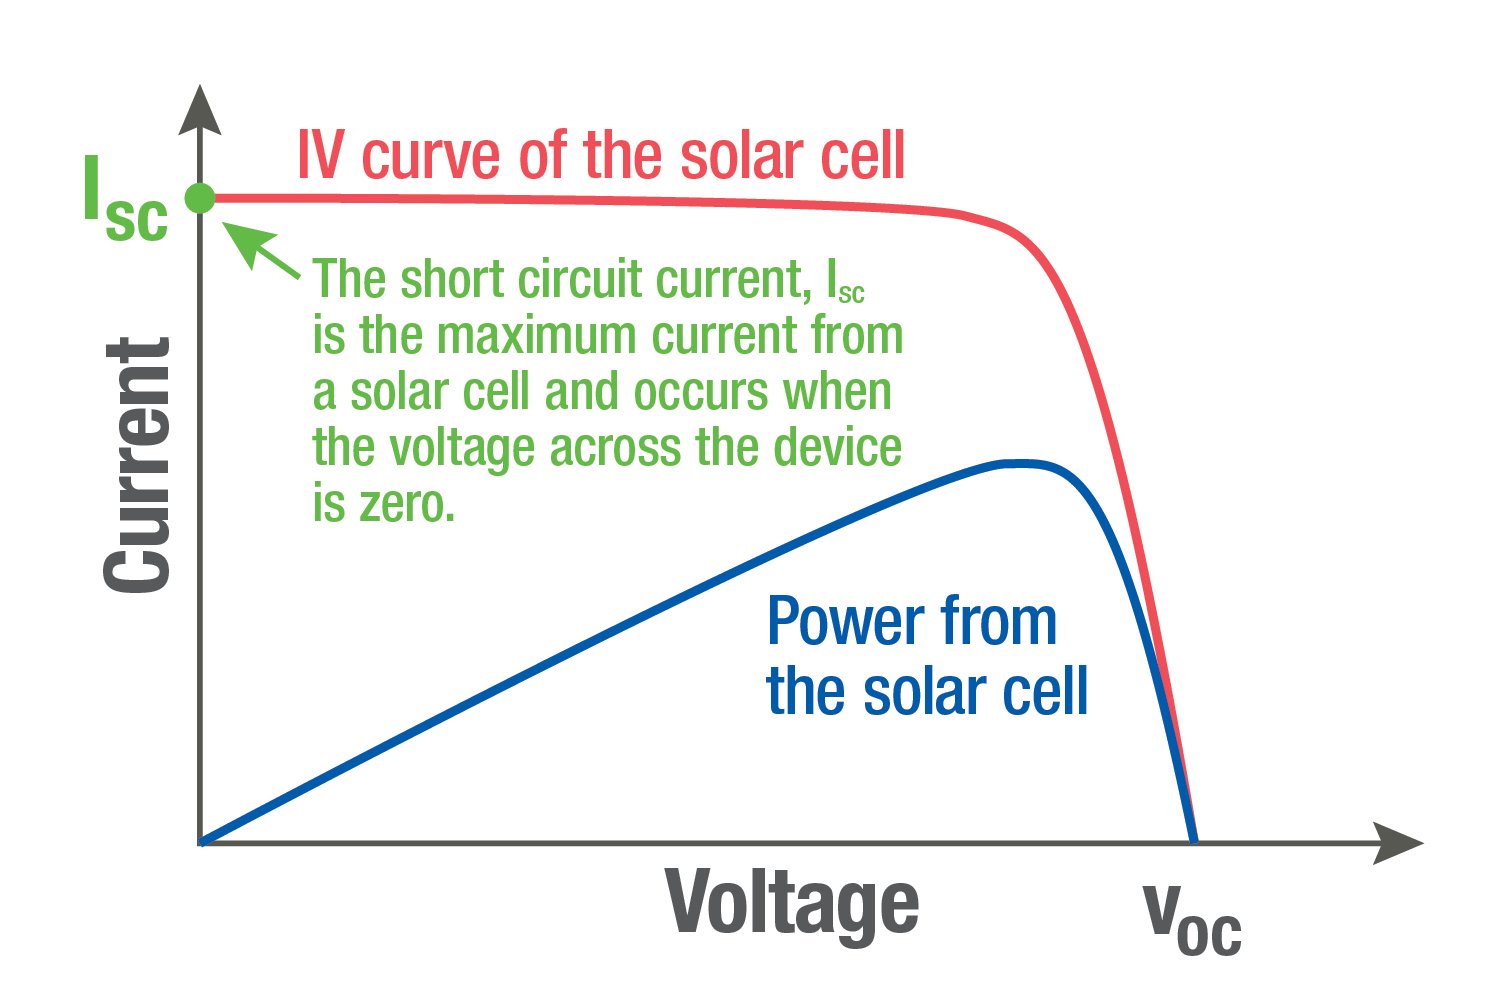 Grafiek waarin de IV-curve van de zonnecel wordt afgezet tegen het vermogen van de zonnecel